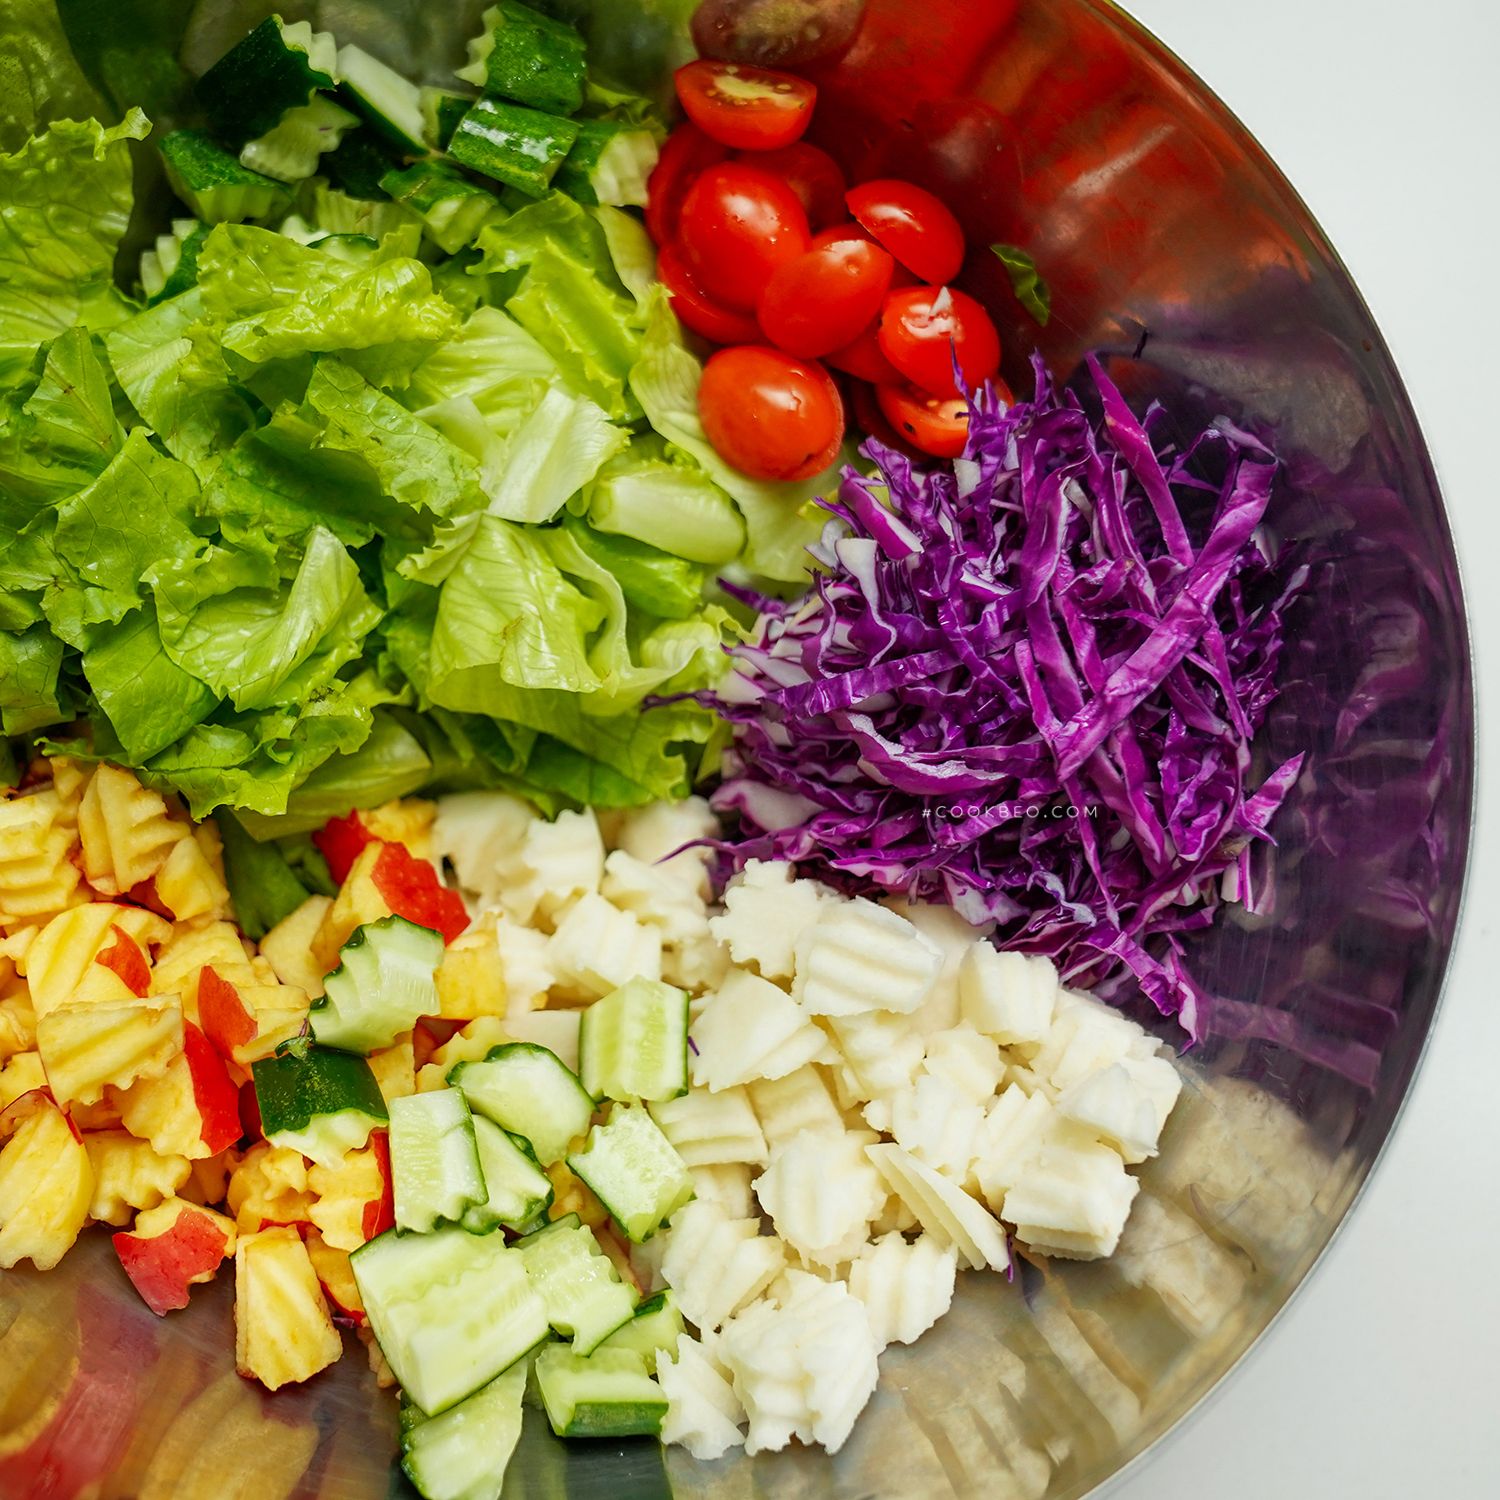 Những nguyên liệu cần chuẩn bị để làm salad rau trộn dầu mè là gì?
